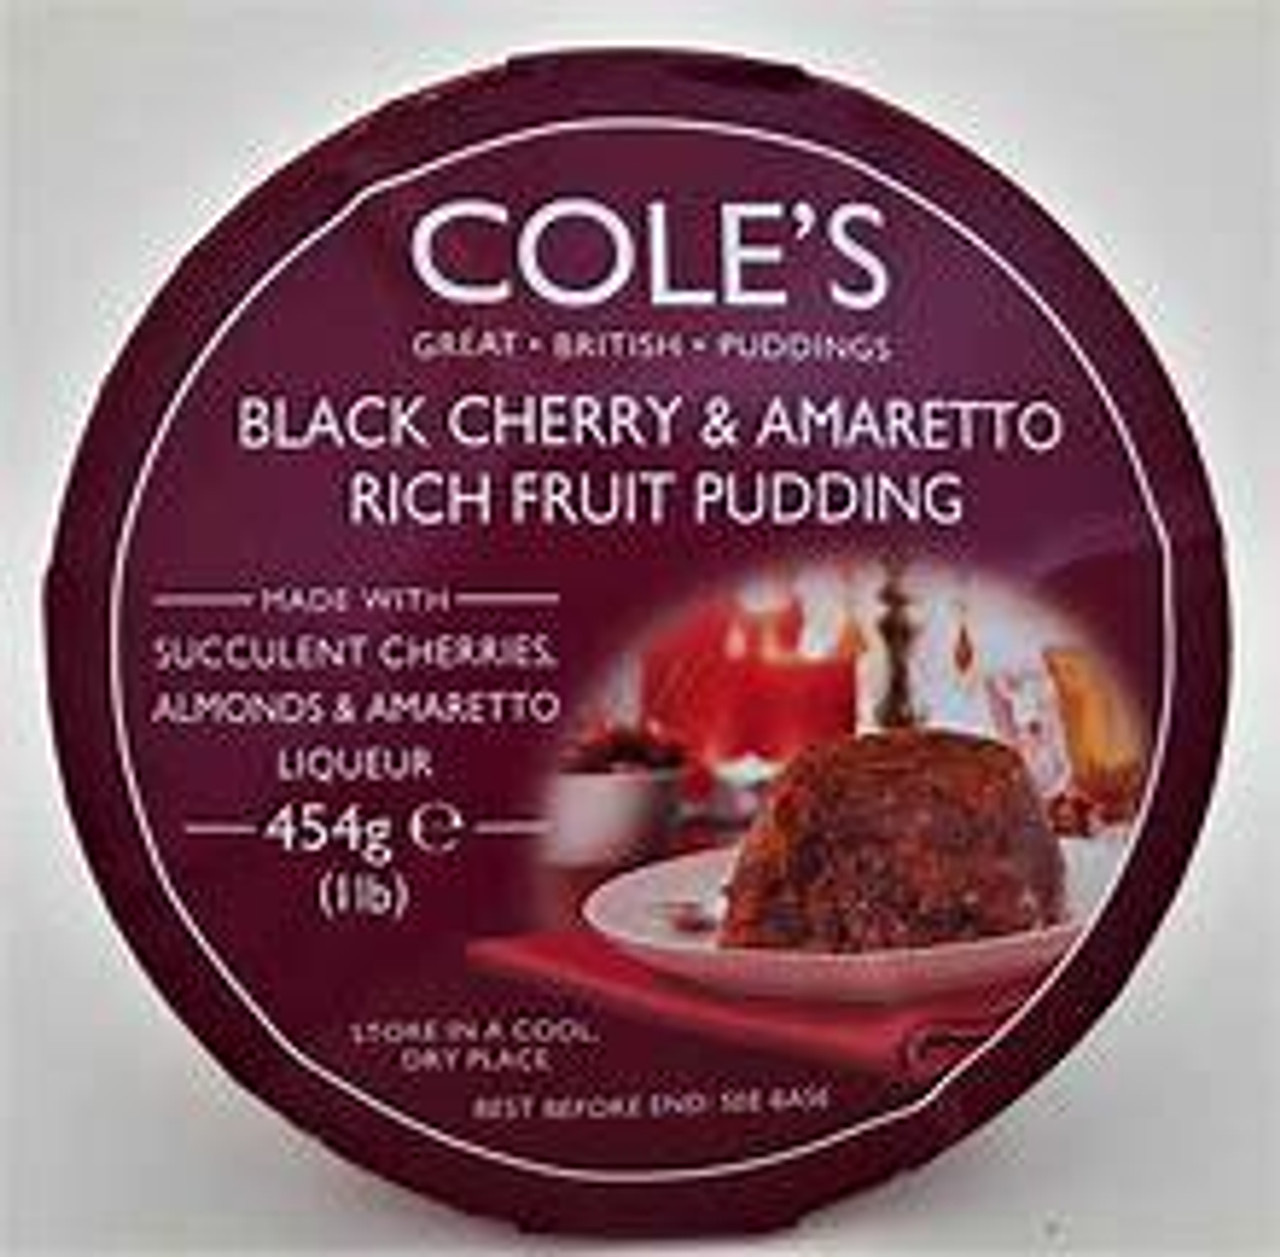 Cole's Black Cherry & Amaretto Rich Fruit Pudding, 454g